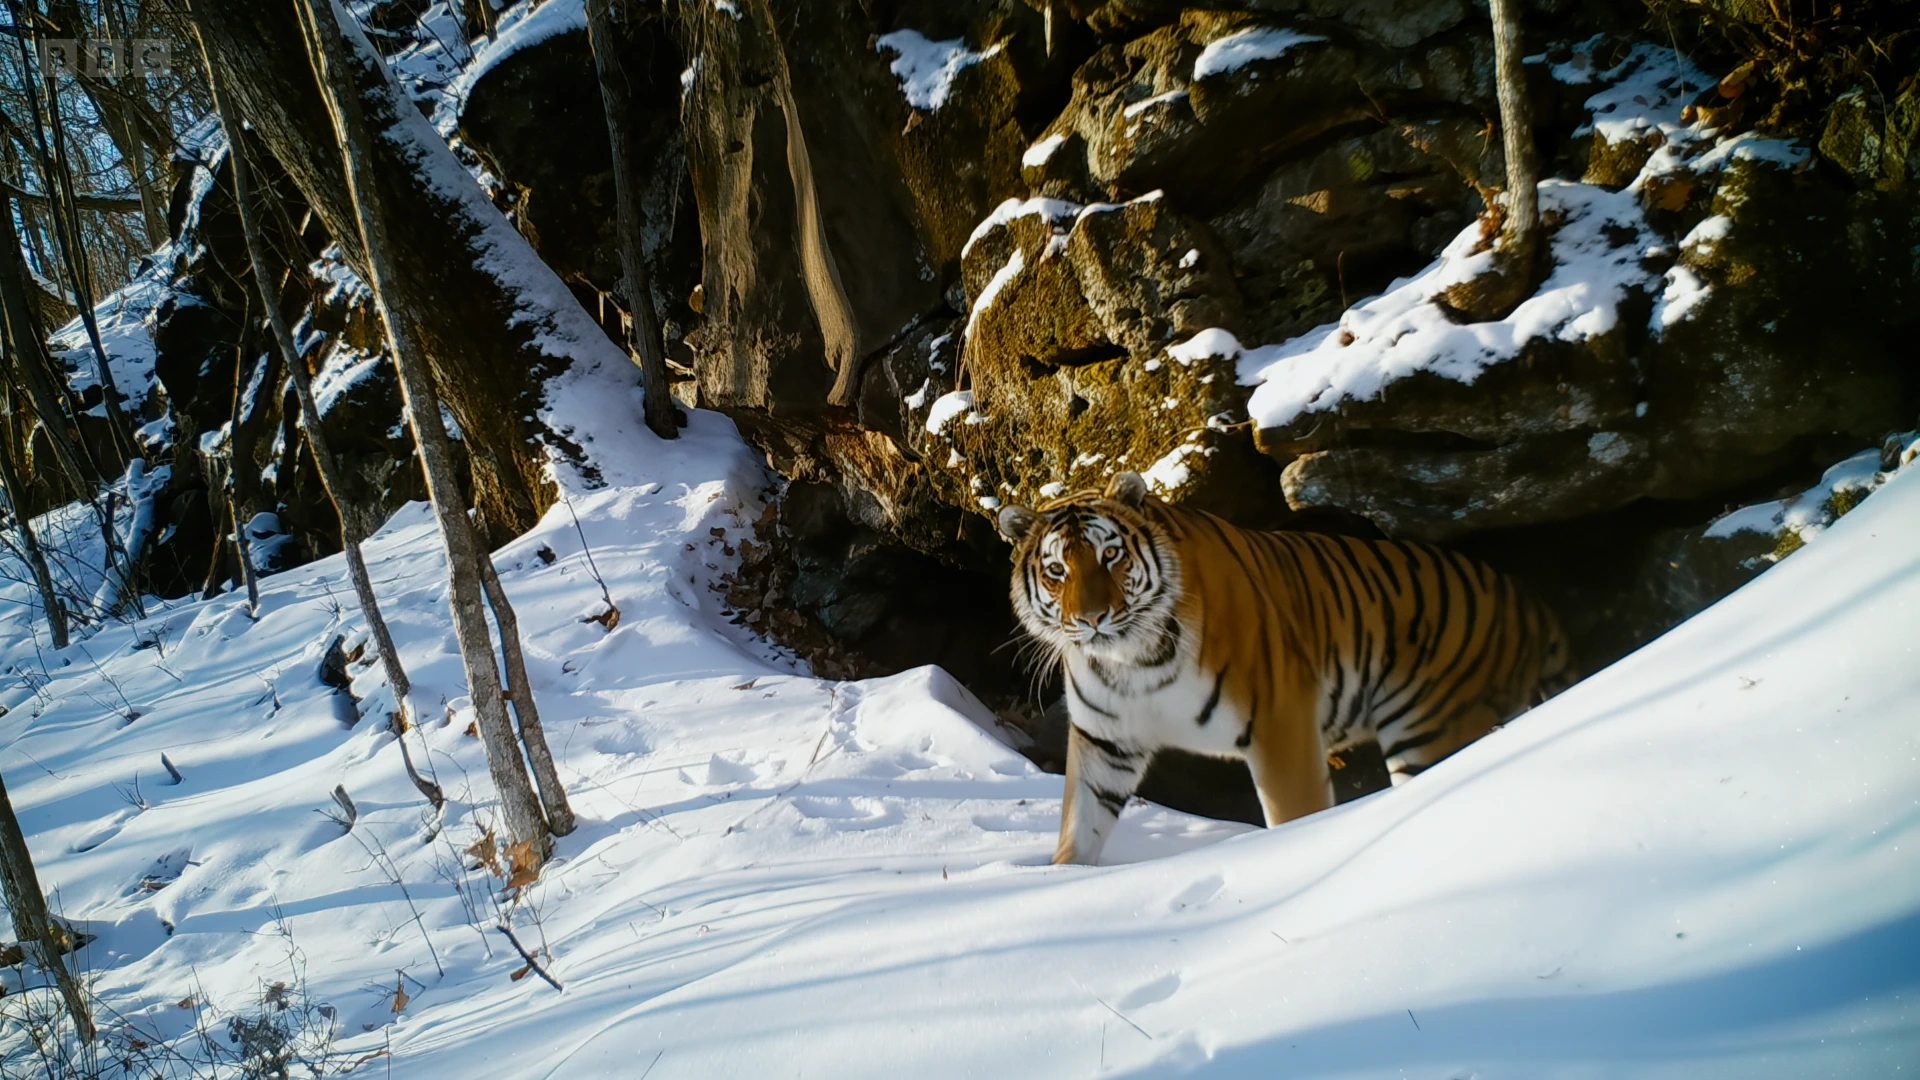 Siberian tiger (Panthera tigris tigris) as shown in Frozen Planet II - Frozen Worlds